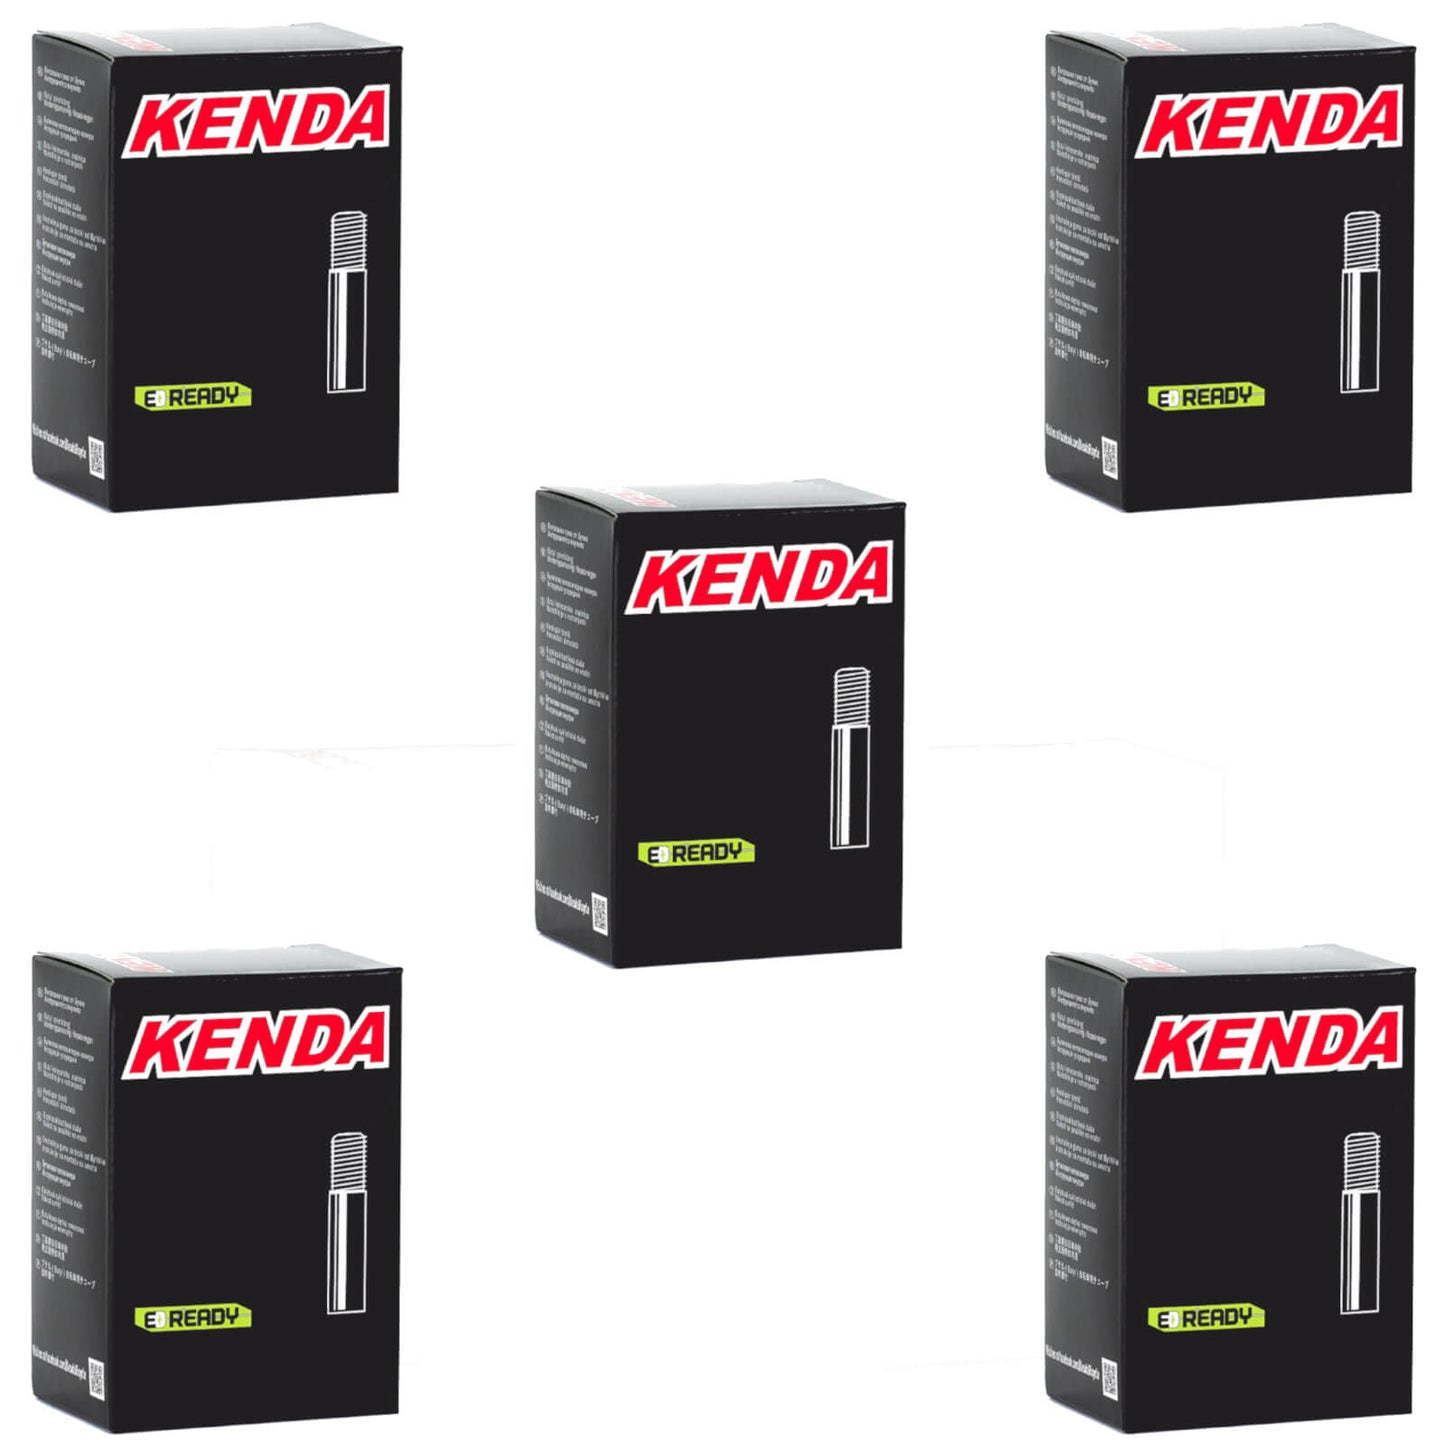 Kenda 27.5x1.5-1.95" 27.5 Inch Schrader Valve Bike Inner Tube Pack of 5